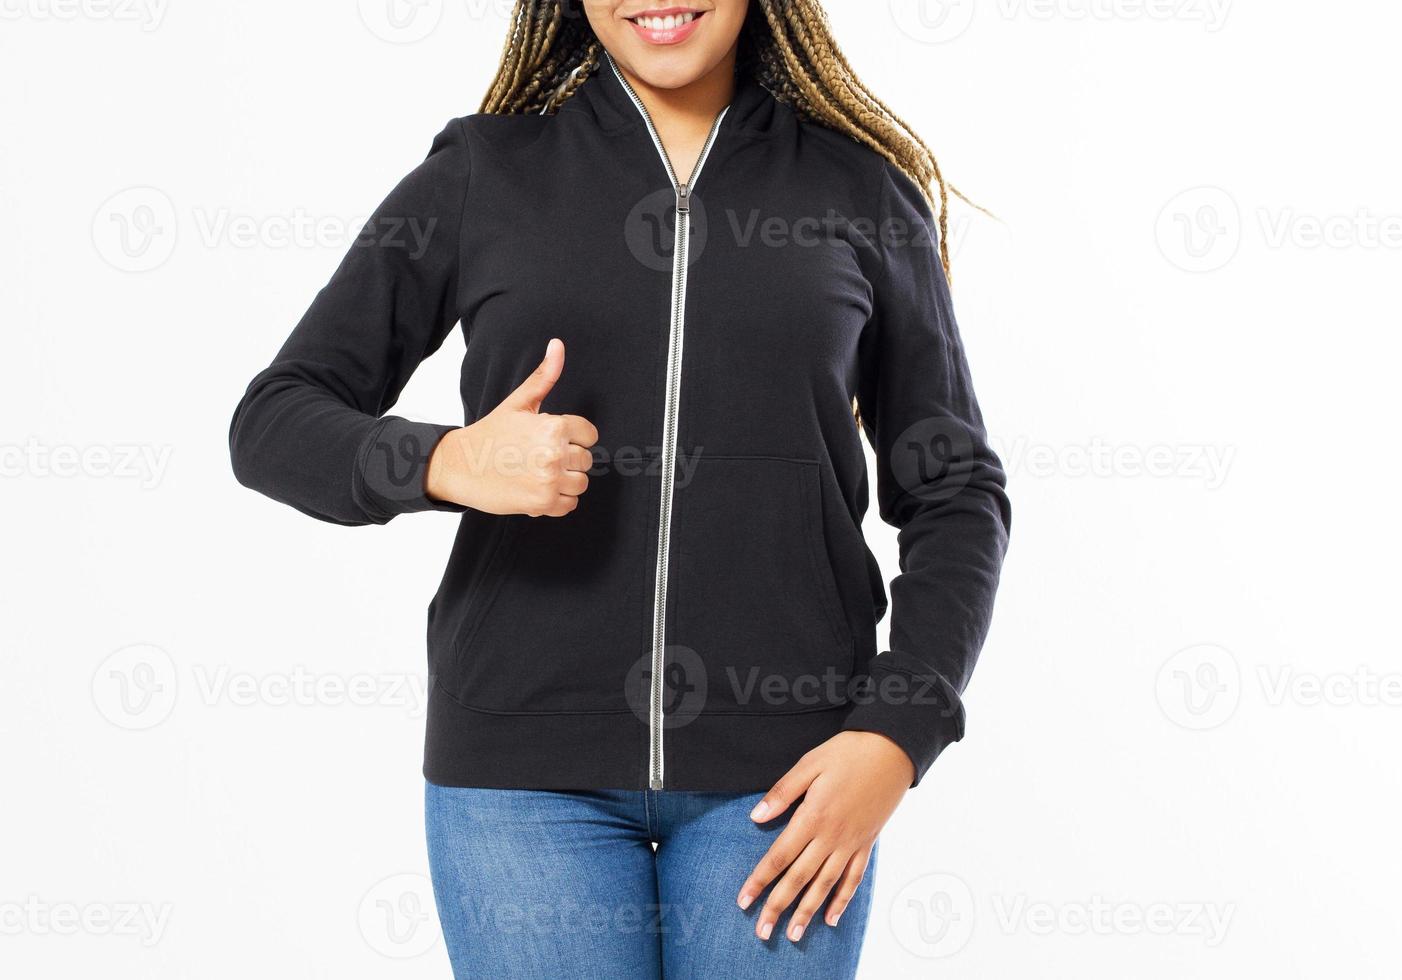 donna afro americana in felpa con cappuccio nera mostra la mano come segno, ragazza in felpa mock up immagine ritagliata foto